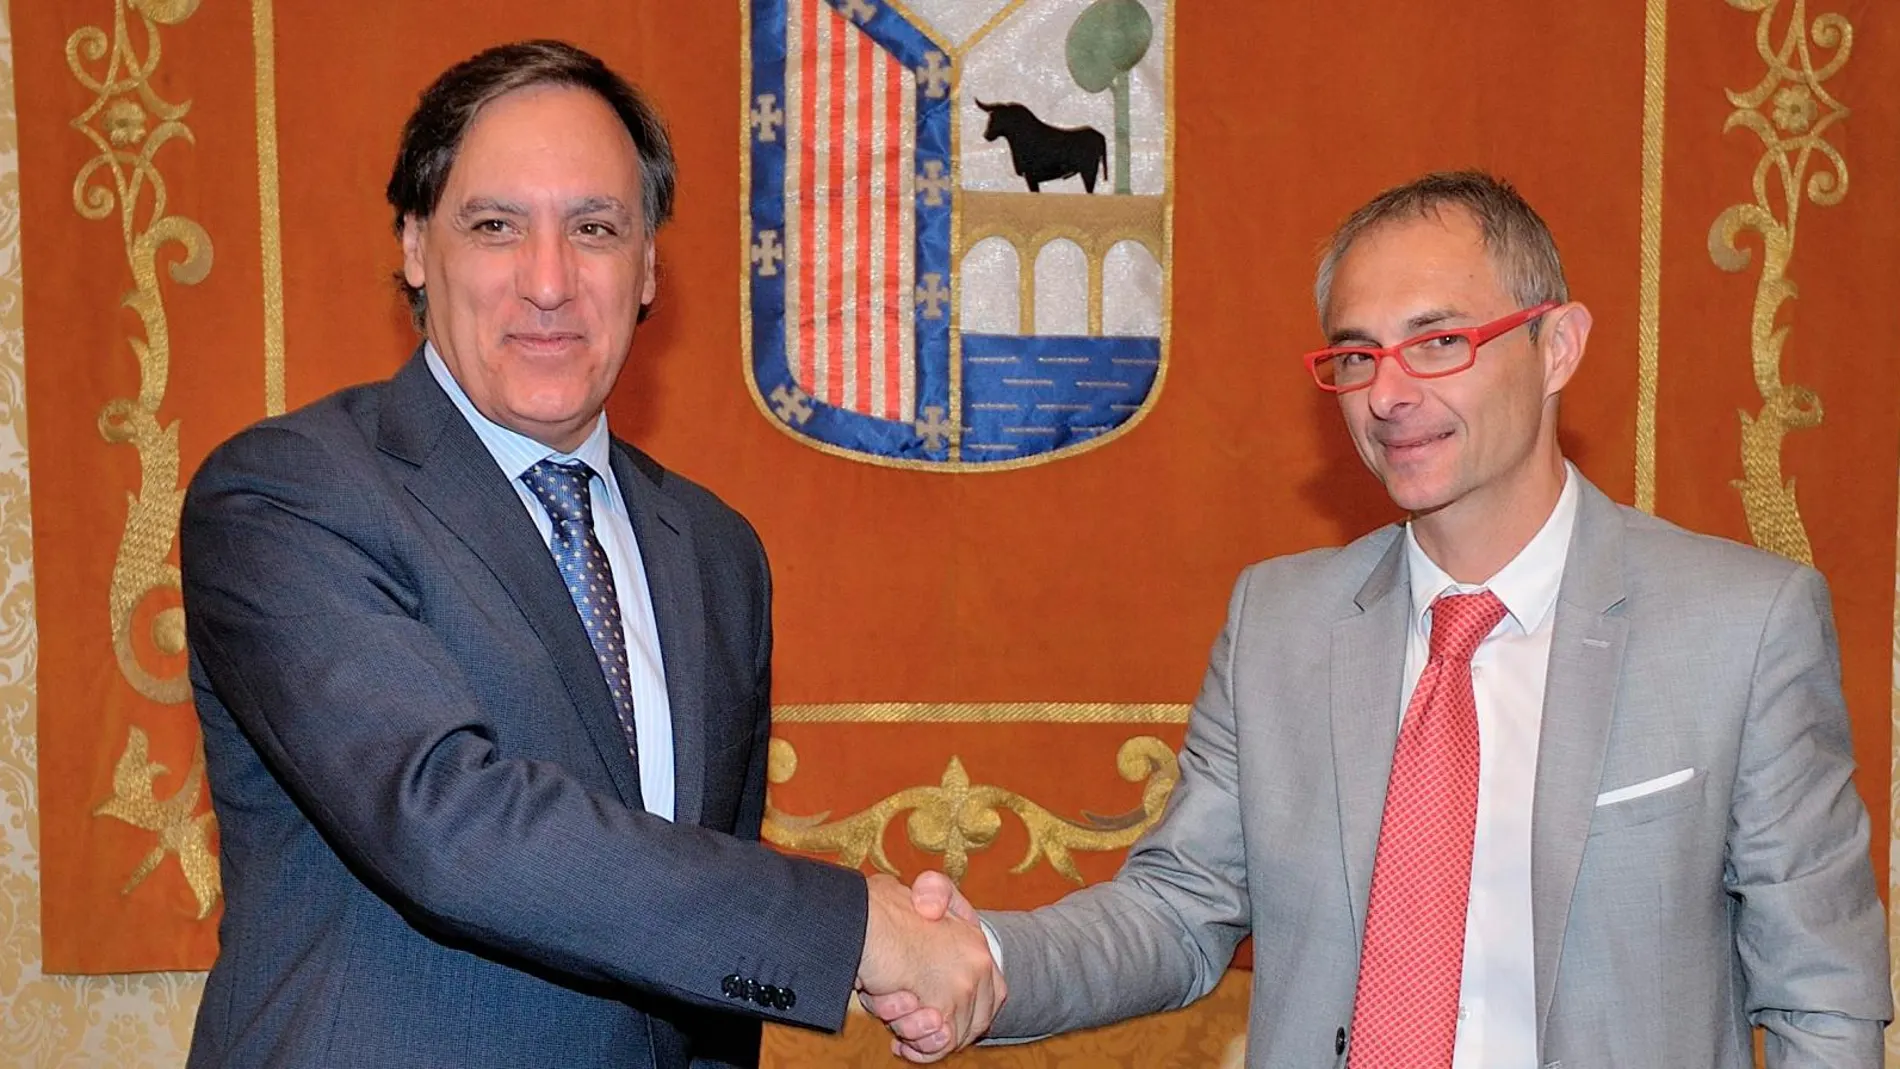 El alcalde de Salamanca, Carlos García Carbayo, junto con el rector de la Usal, Ricardo Rivero